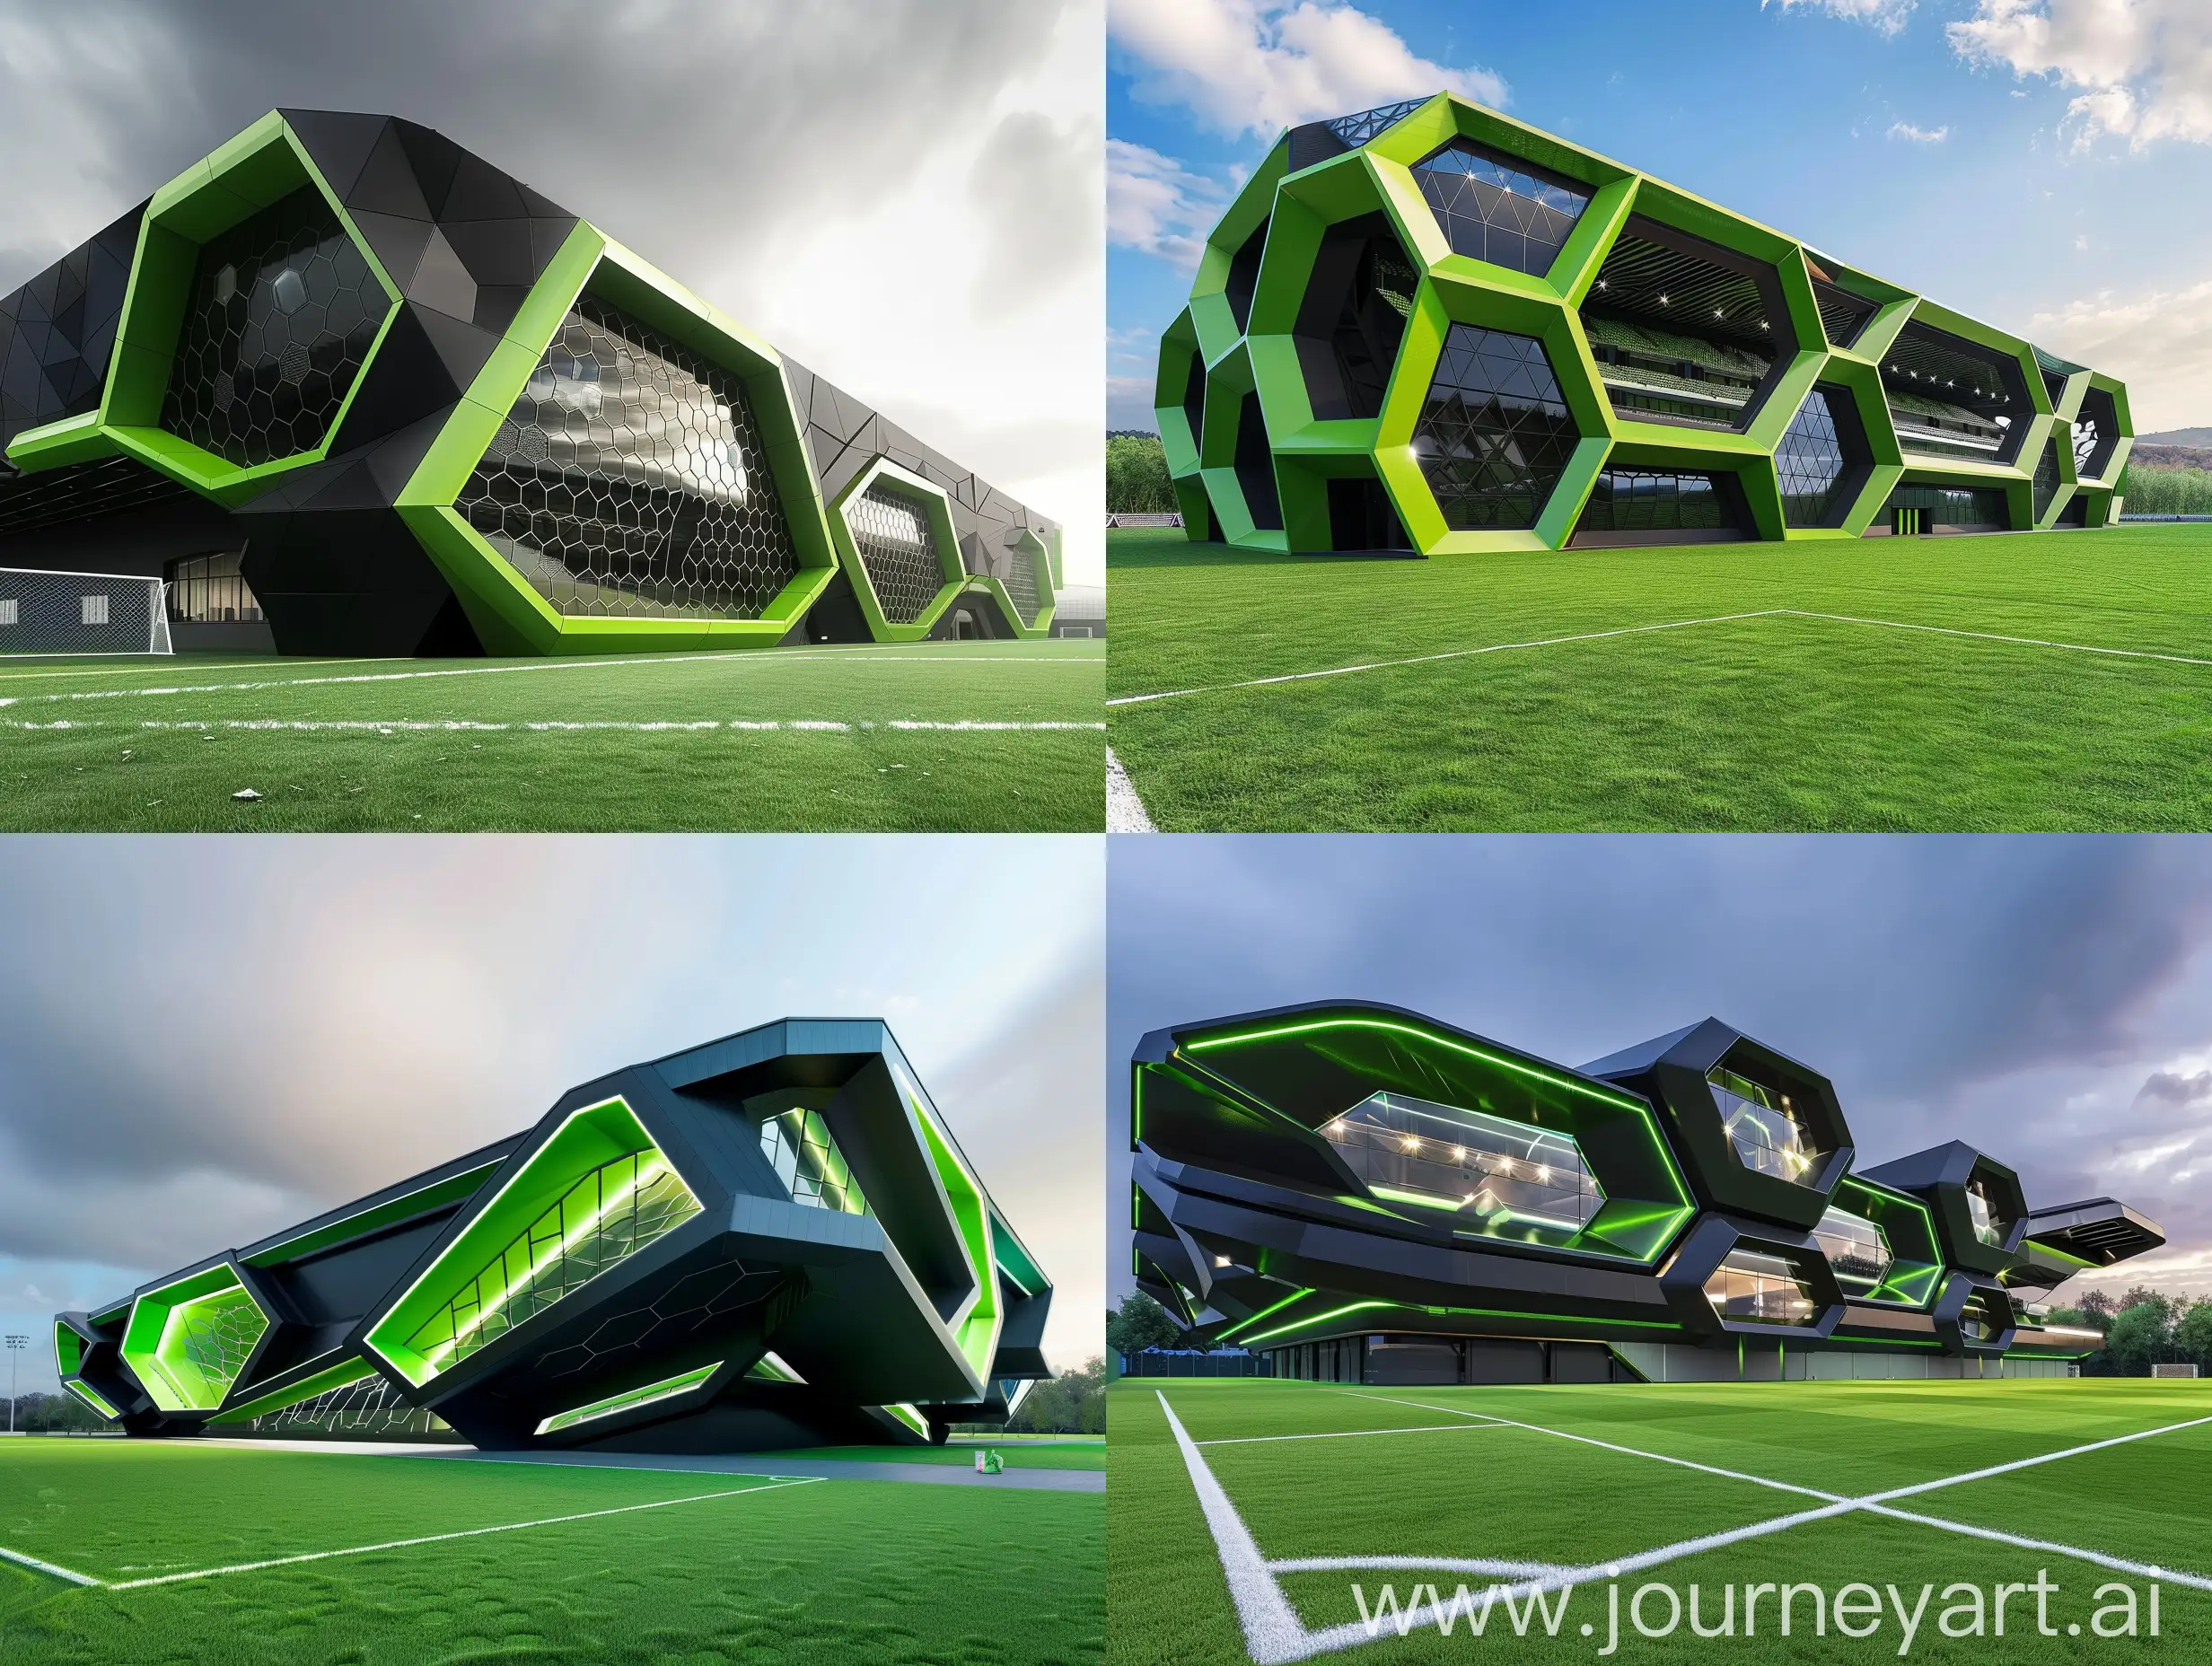 صورة جانبية و خارجية لملعب كرة قدم, تصميم الملعب عصري, يعتمد على المعين كشكل هندسي. اللون الاخضر و الاسود